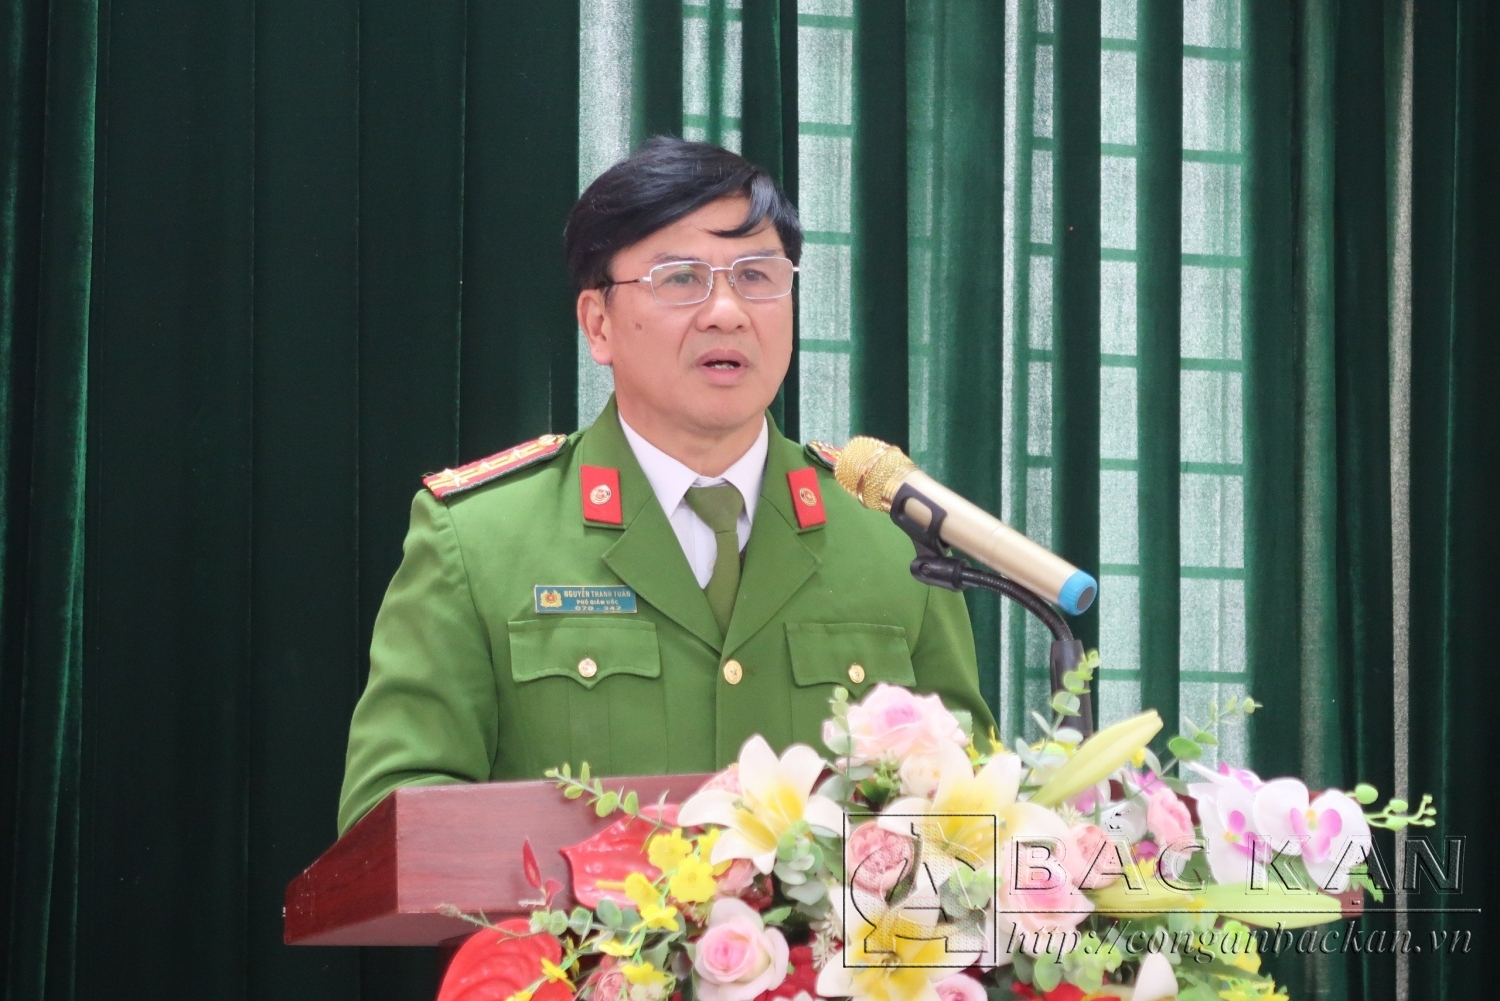 Đại tá Nguyễn Thanh Tuân phát biểu tại Hội nghị